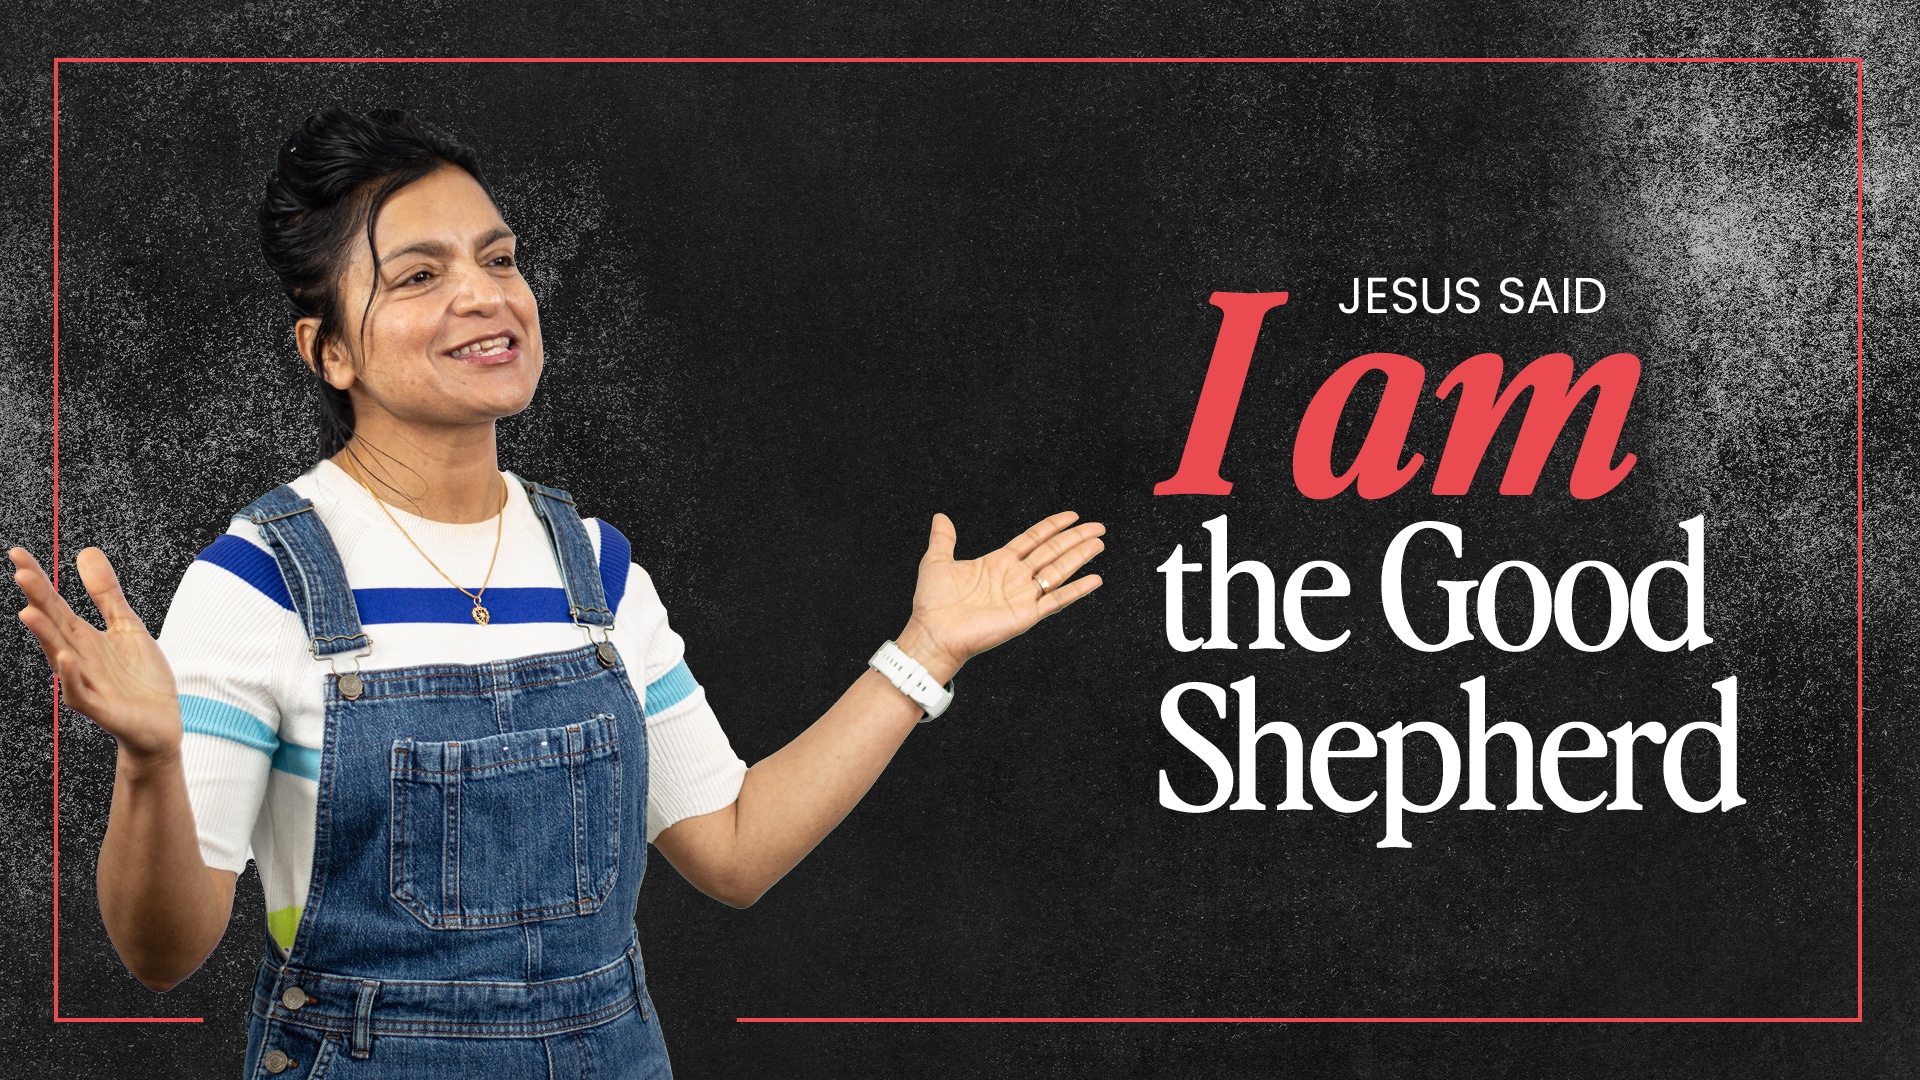 ‘I AM the Good Shepherd’